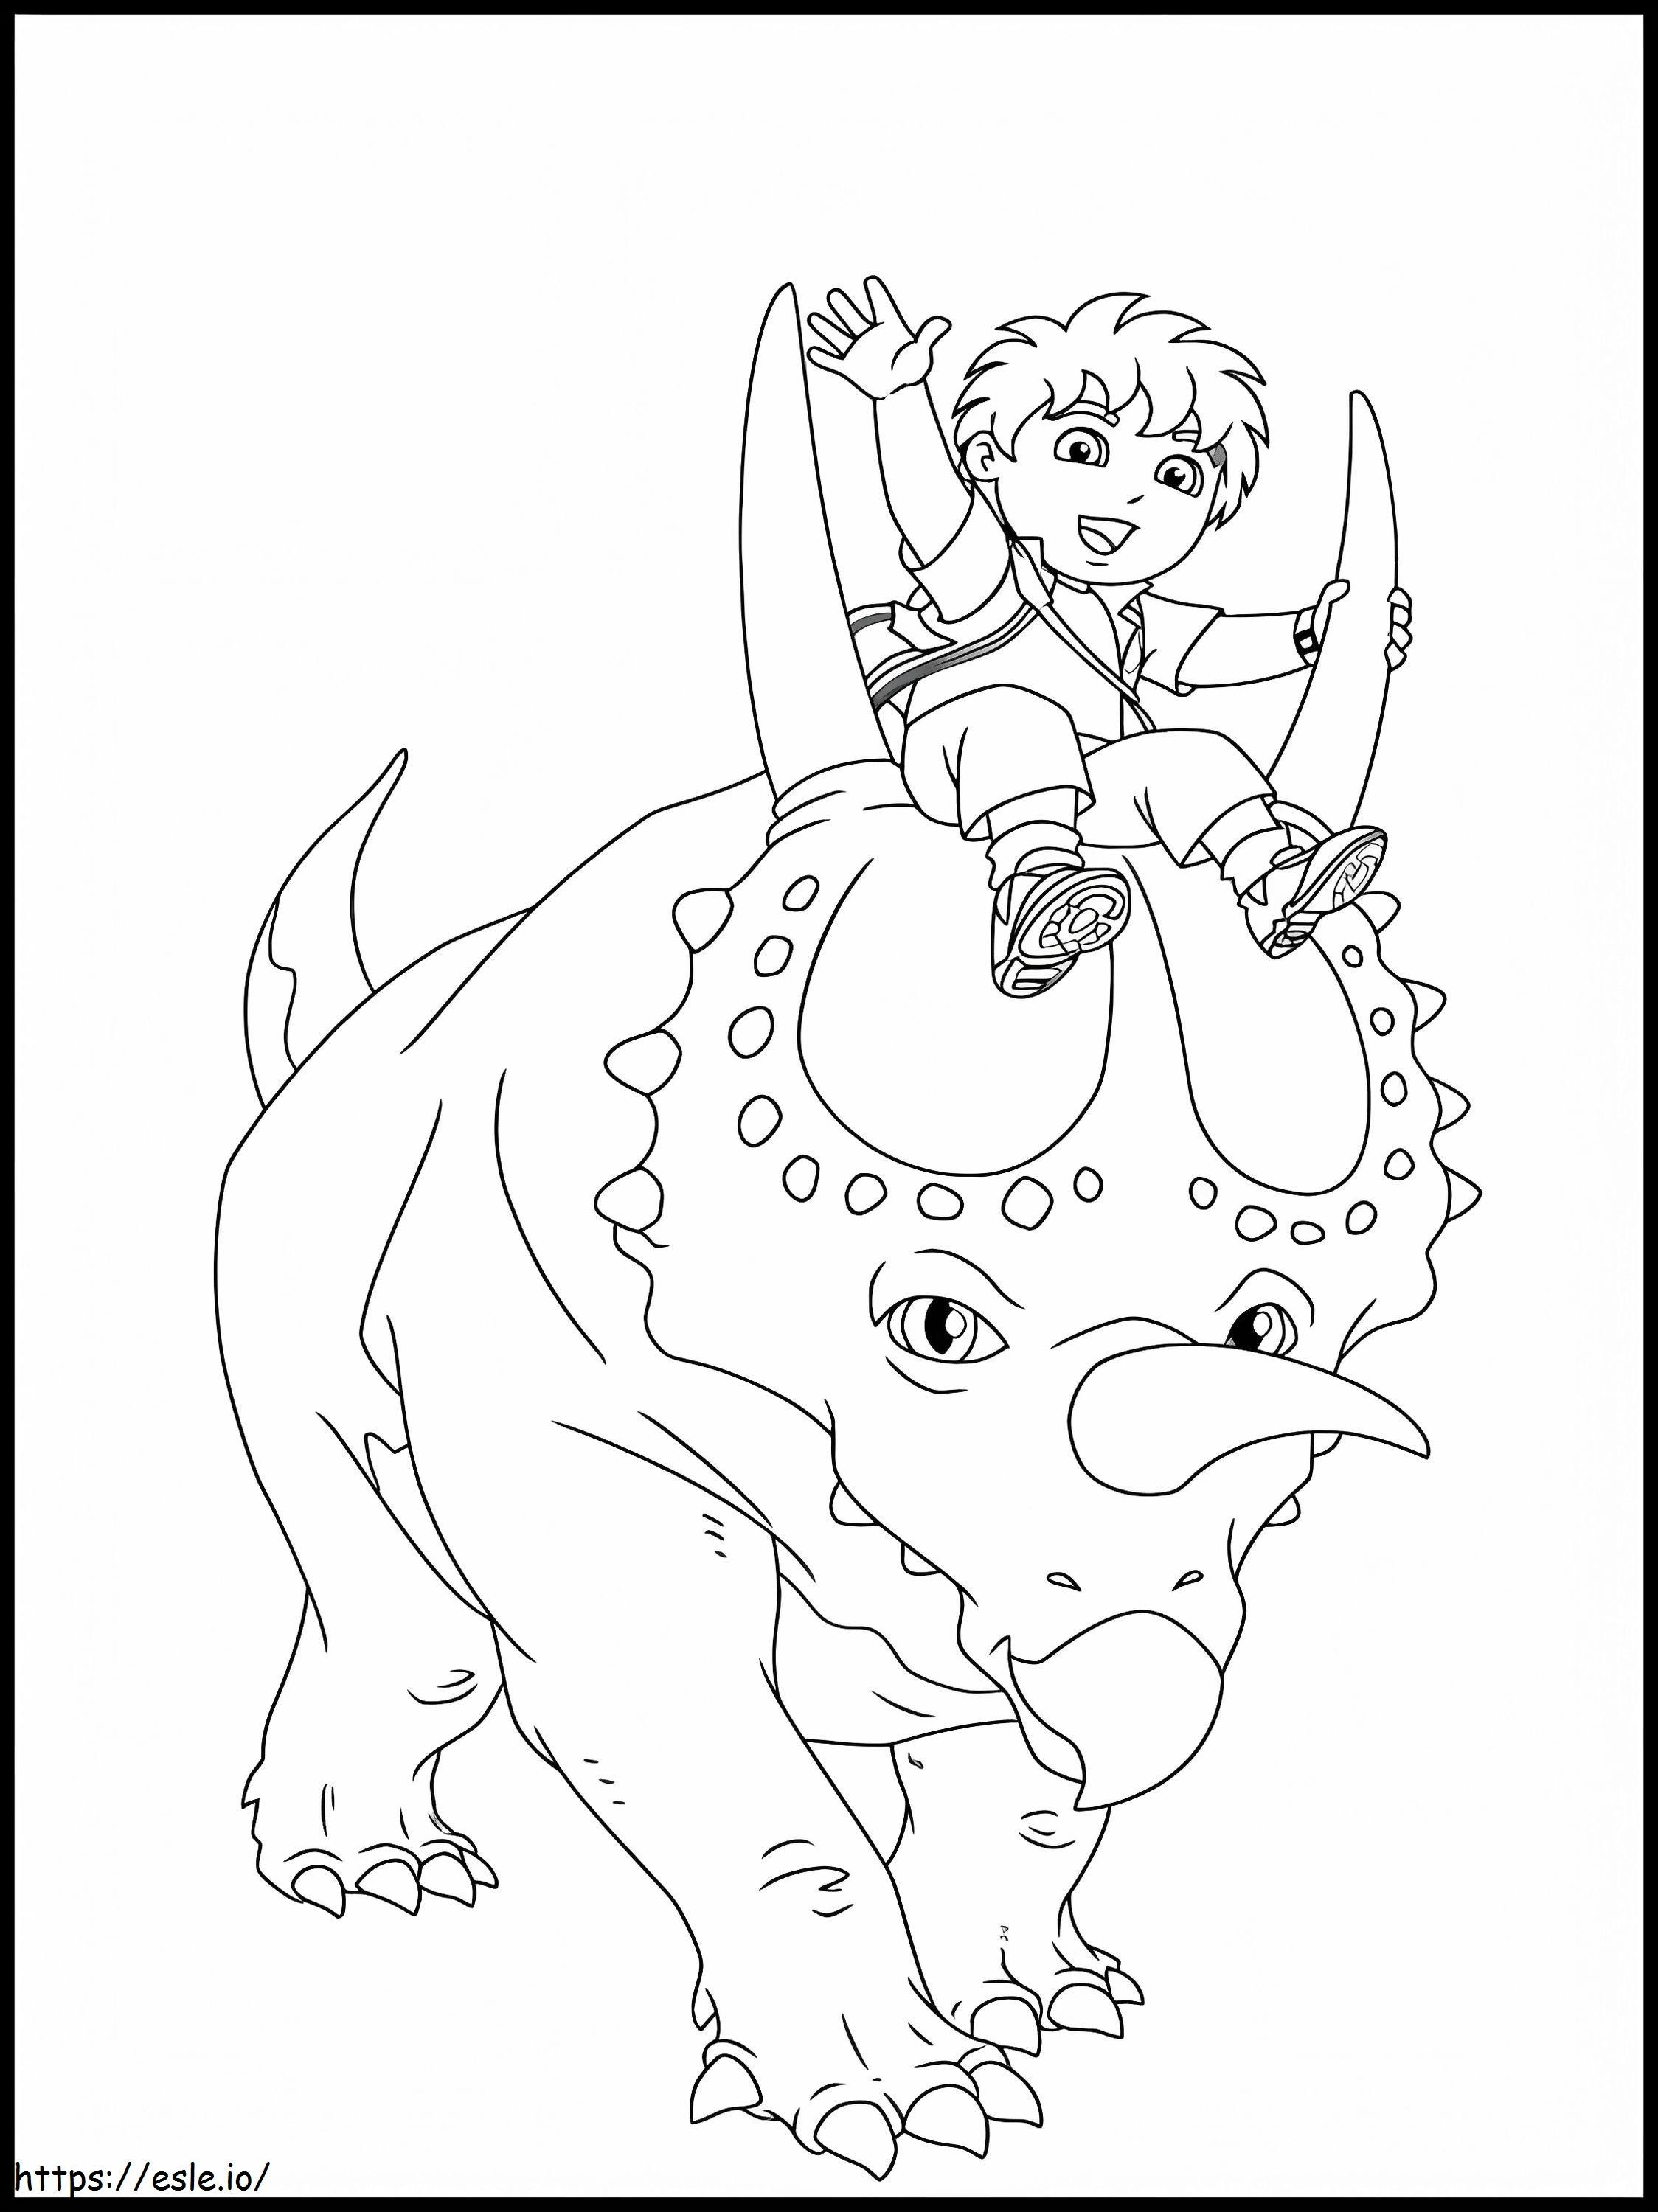 Diego montando um dinossauro de três chifres para colorir